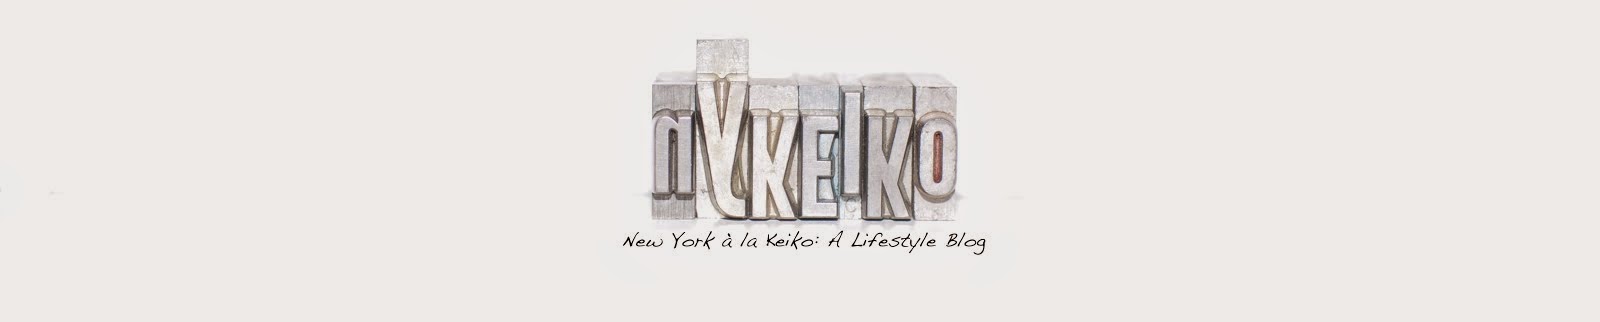 New York à la Keiko